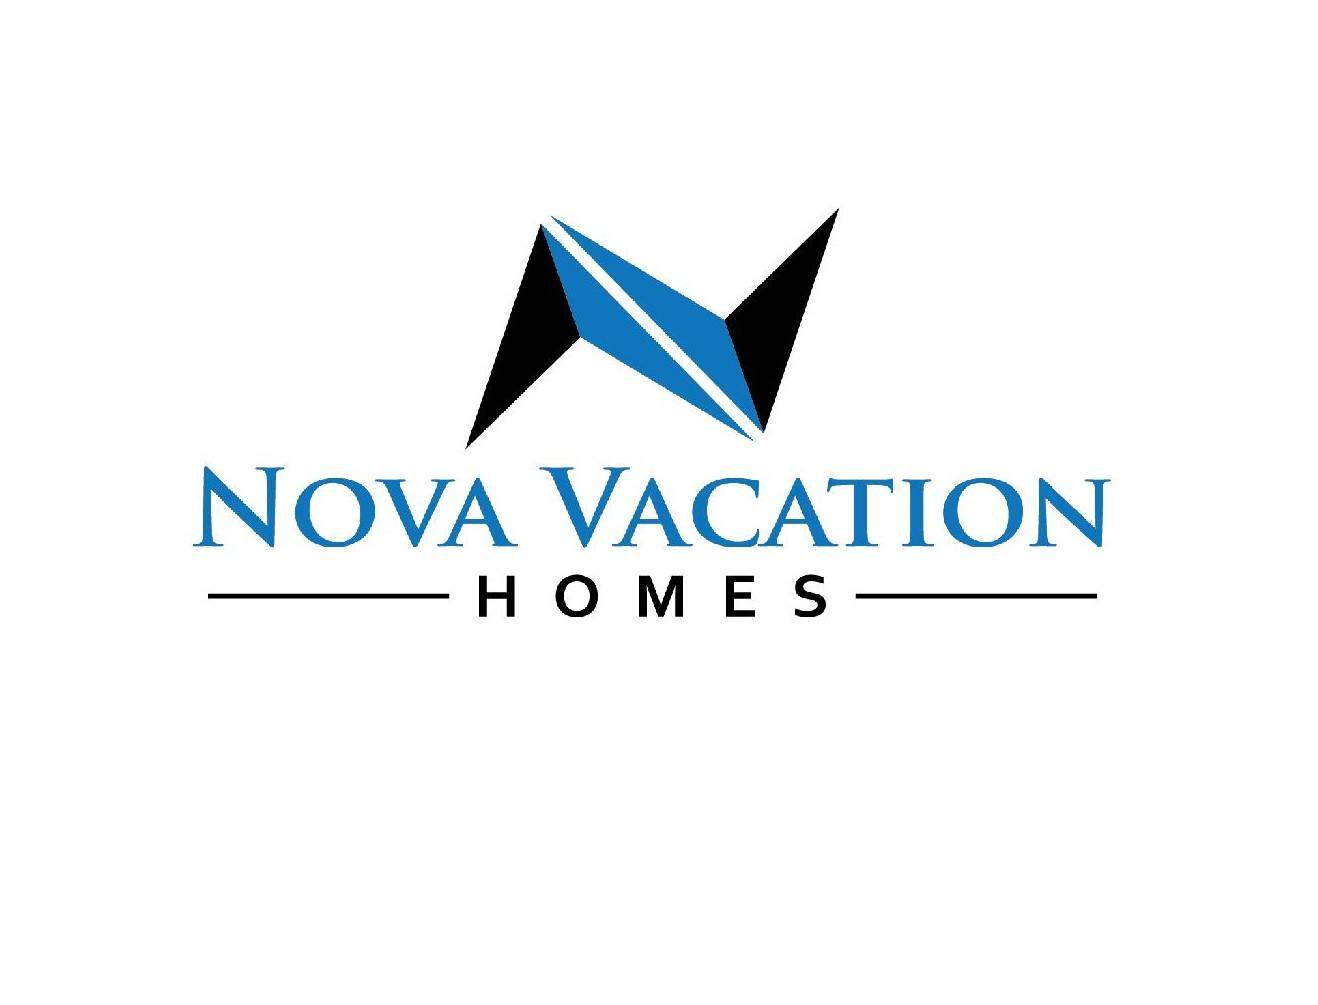 Nova Vacation Homes